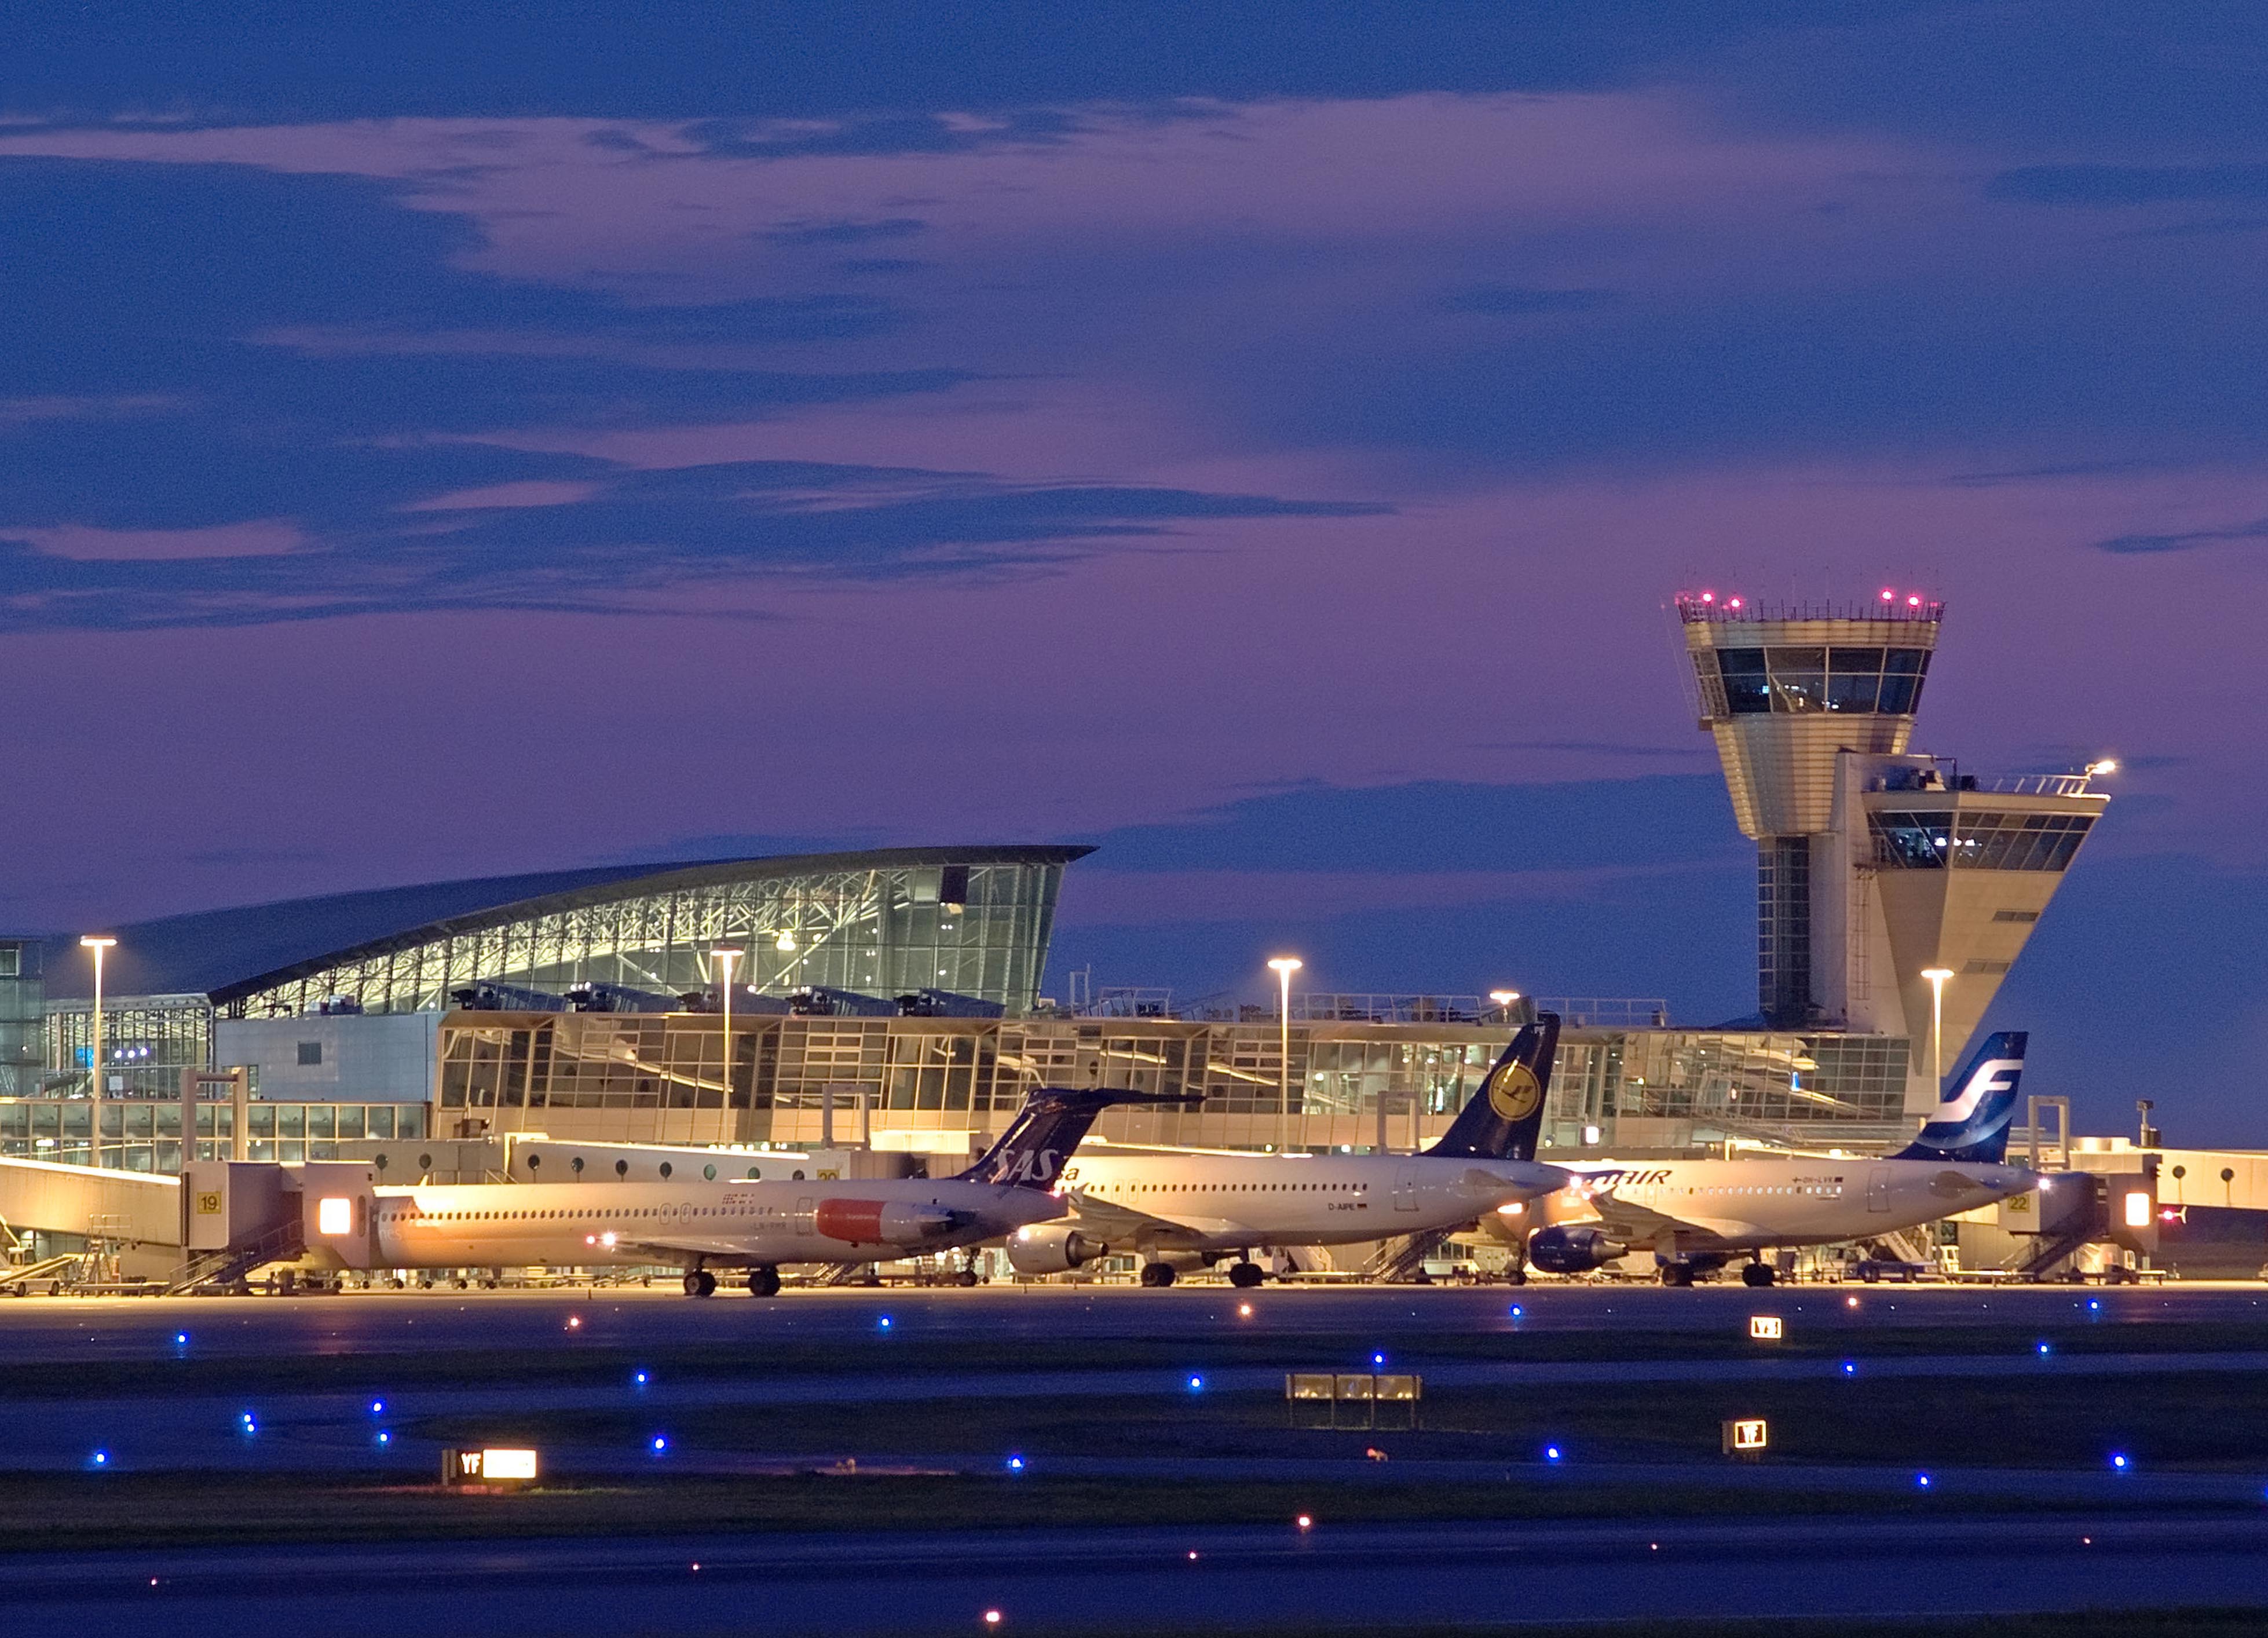 【携程攻略】吉隆坡国际机场怎么样/怎么去,吉隆坡国际机场用户点评/评价